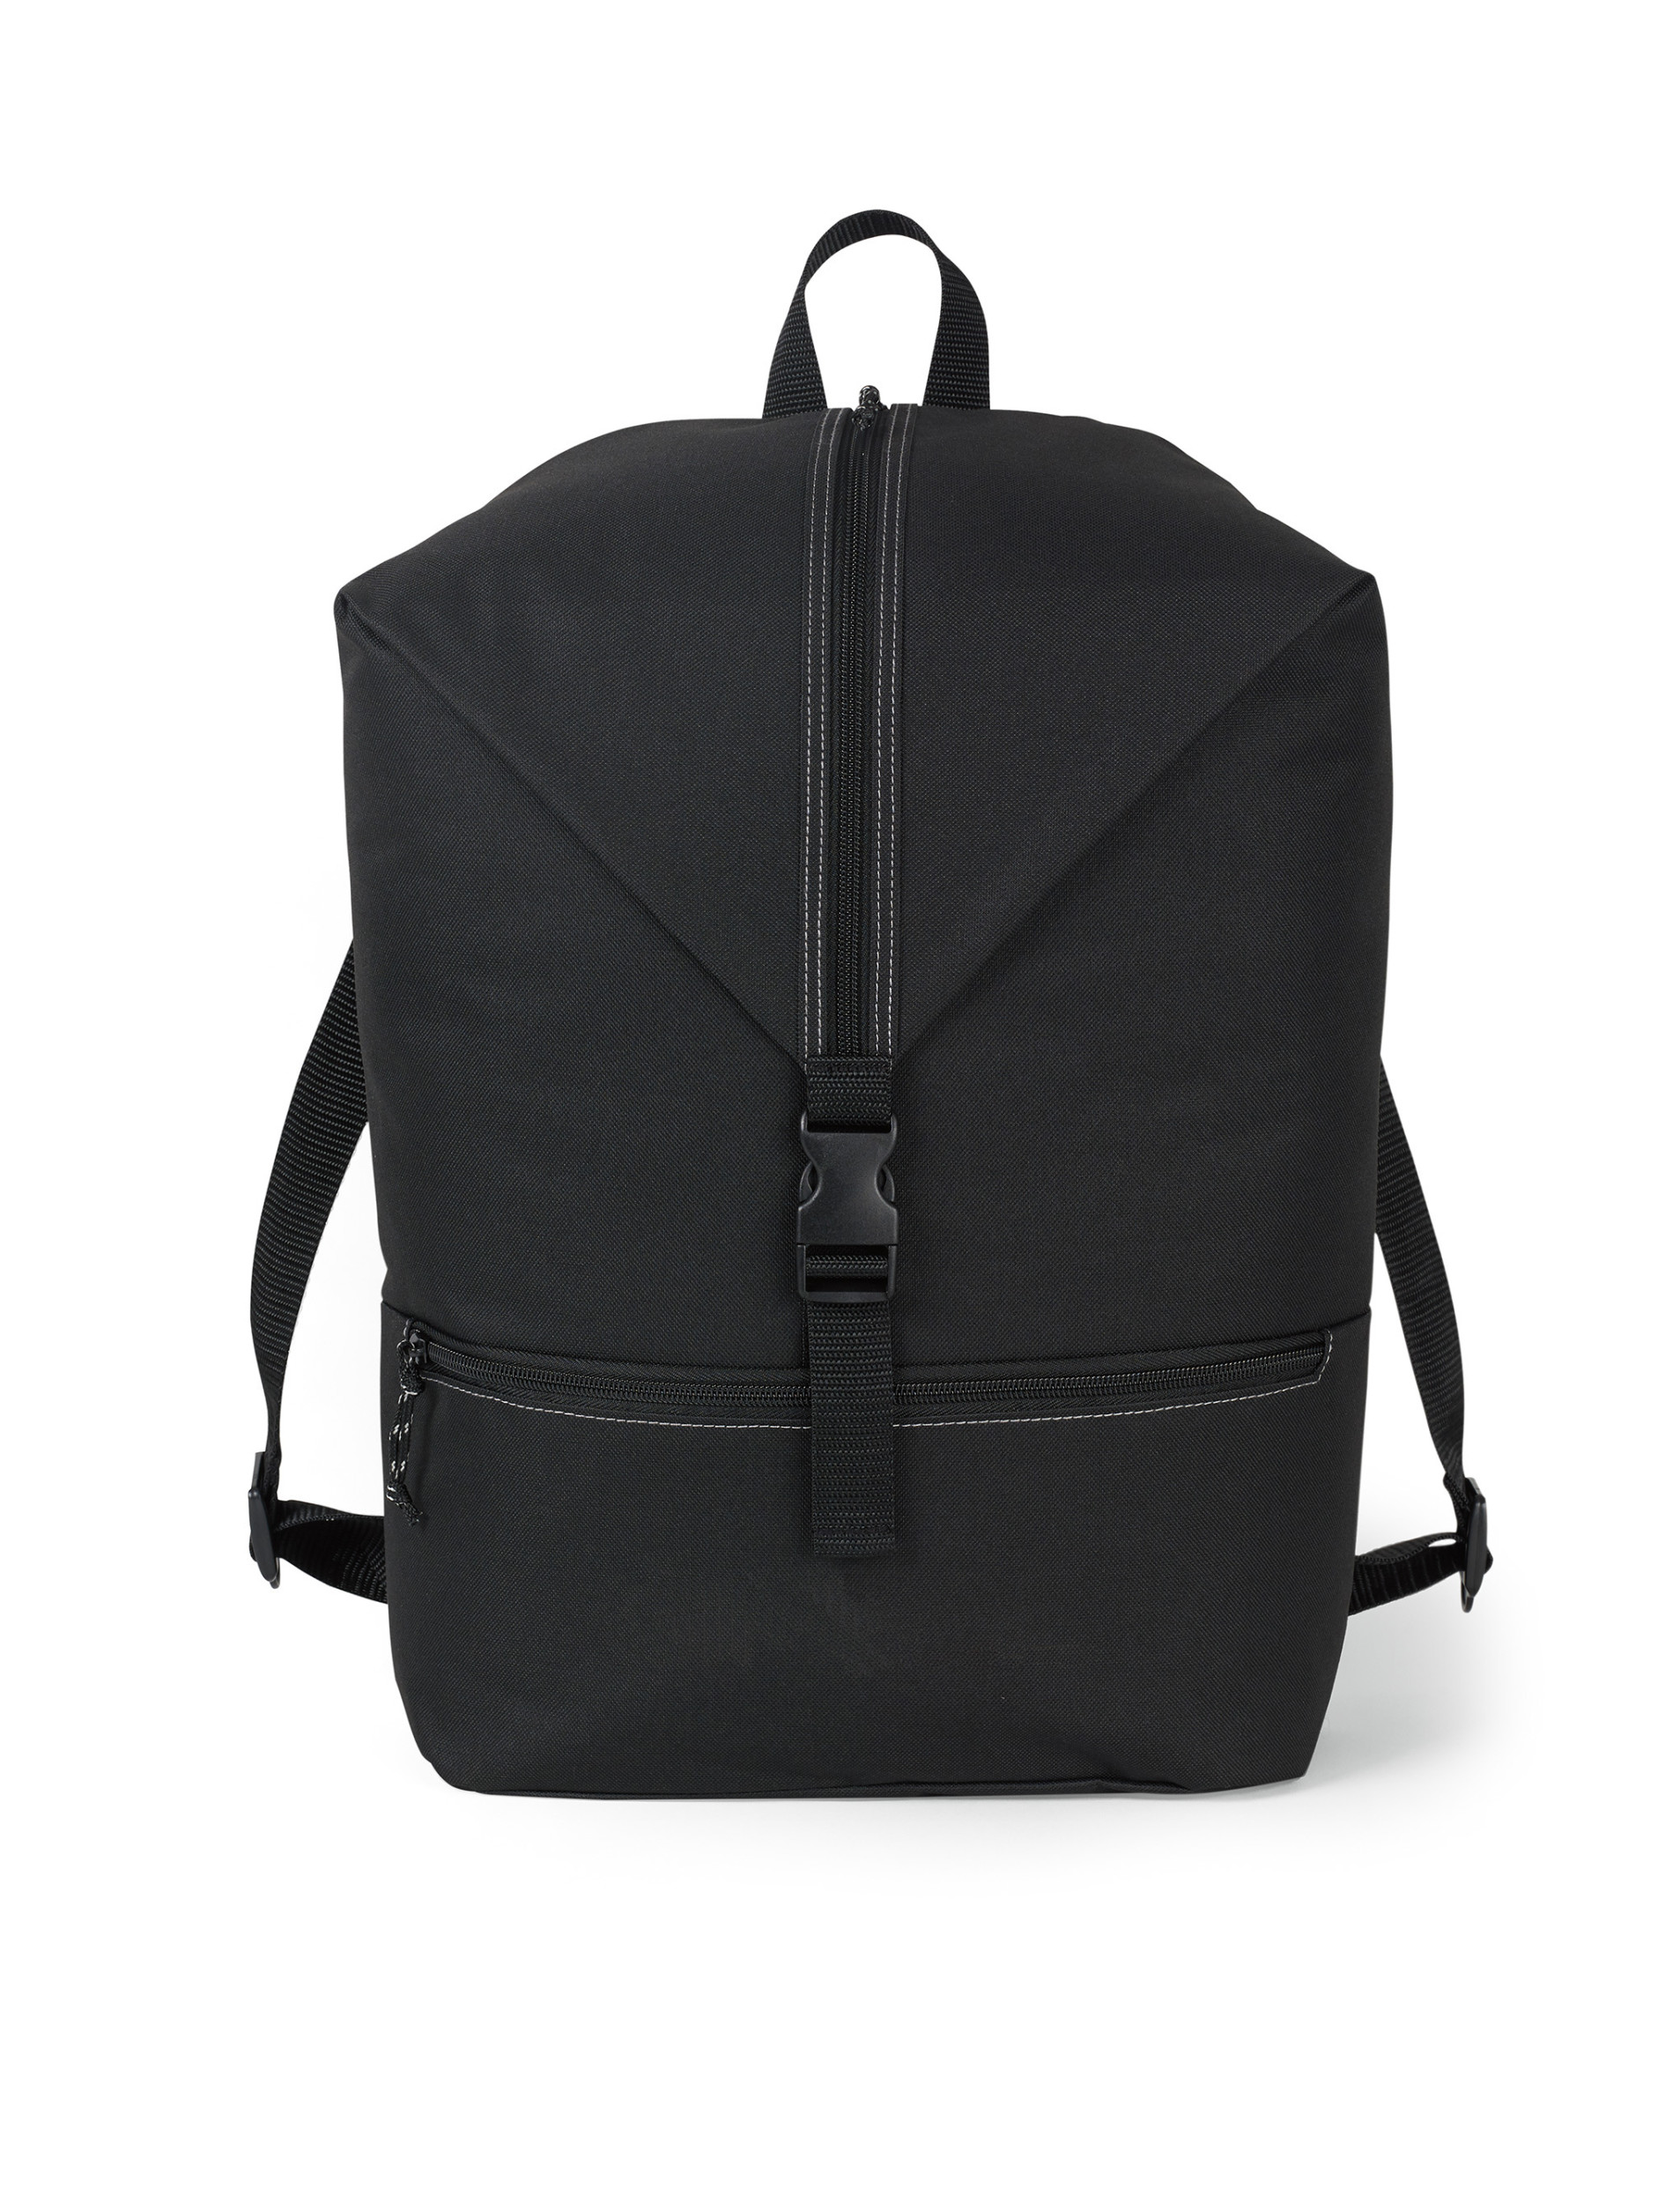 Gemline 100068 - Rutledge Backpack